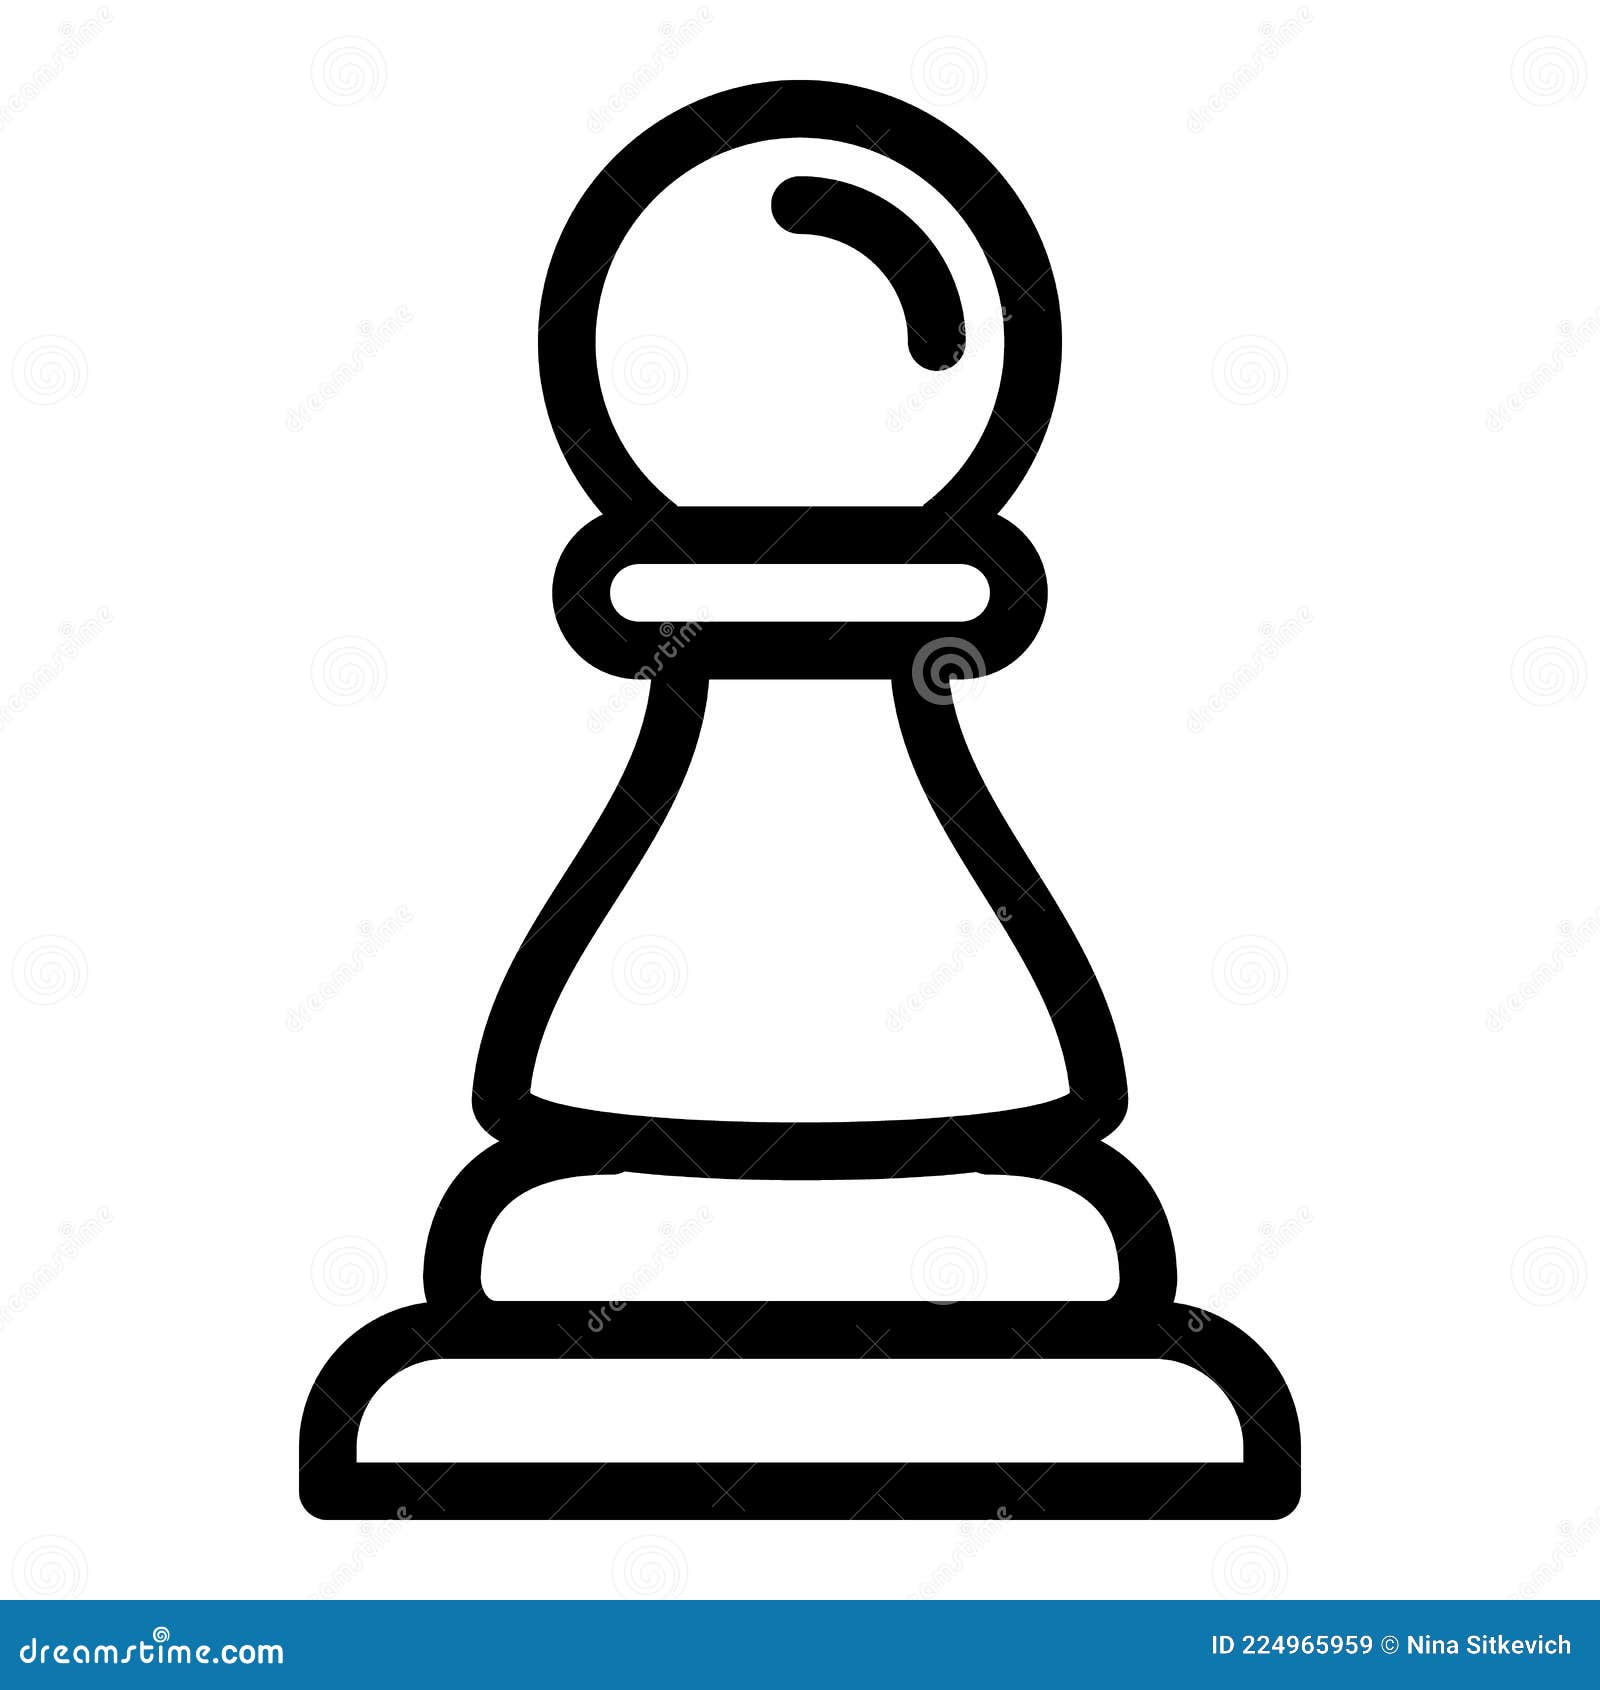 Peão de xadrez - ícones de jogos grátis